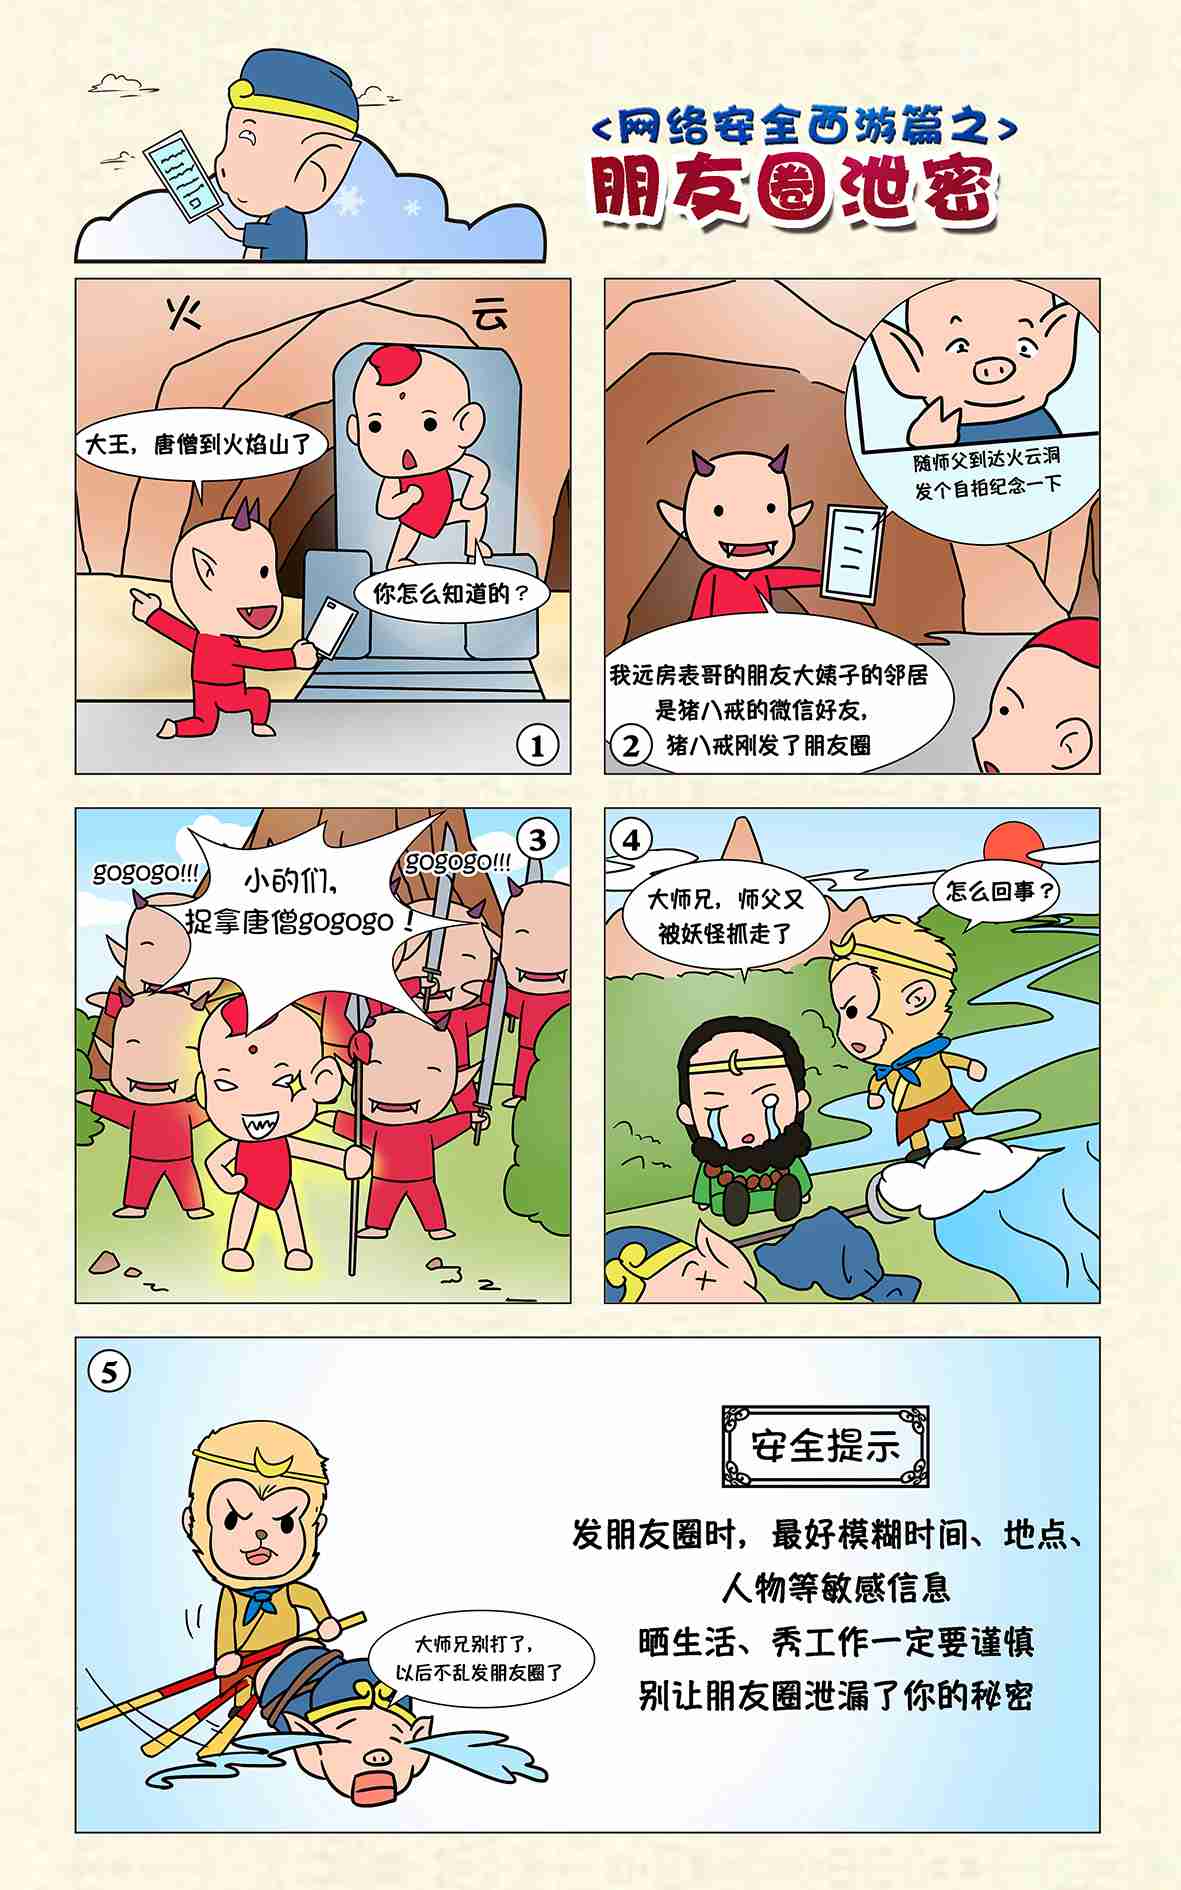 2016国家网络安全宣传周漫画展示:西游篇--IT